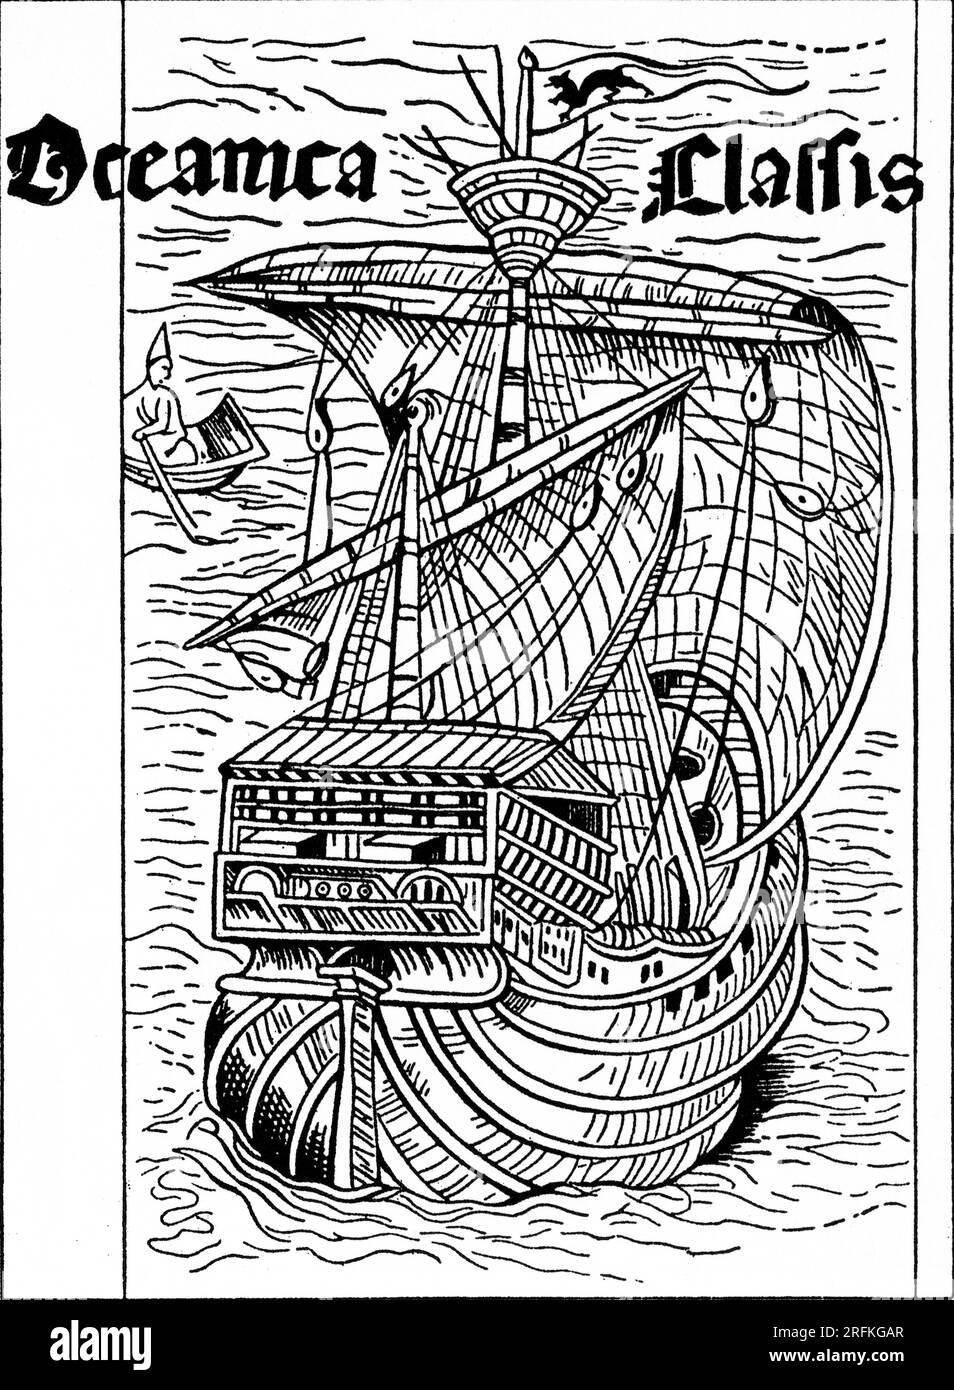 Xilografia illustrativa dall'edizione latina della lettera di Colombo nel suo primo viaggio, 1494. Una lettera scritta da Cristoforo Colombo il 15 febbraio 1493 è il primo documento noto che annuncia i risultati del suo primo viaggio che partì nel 1492 e raggiunse le Americhe. Foto Stock